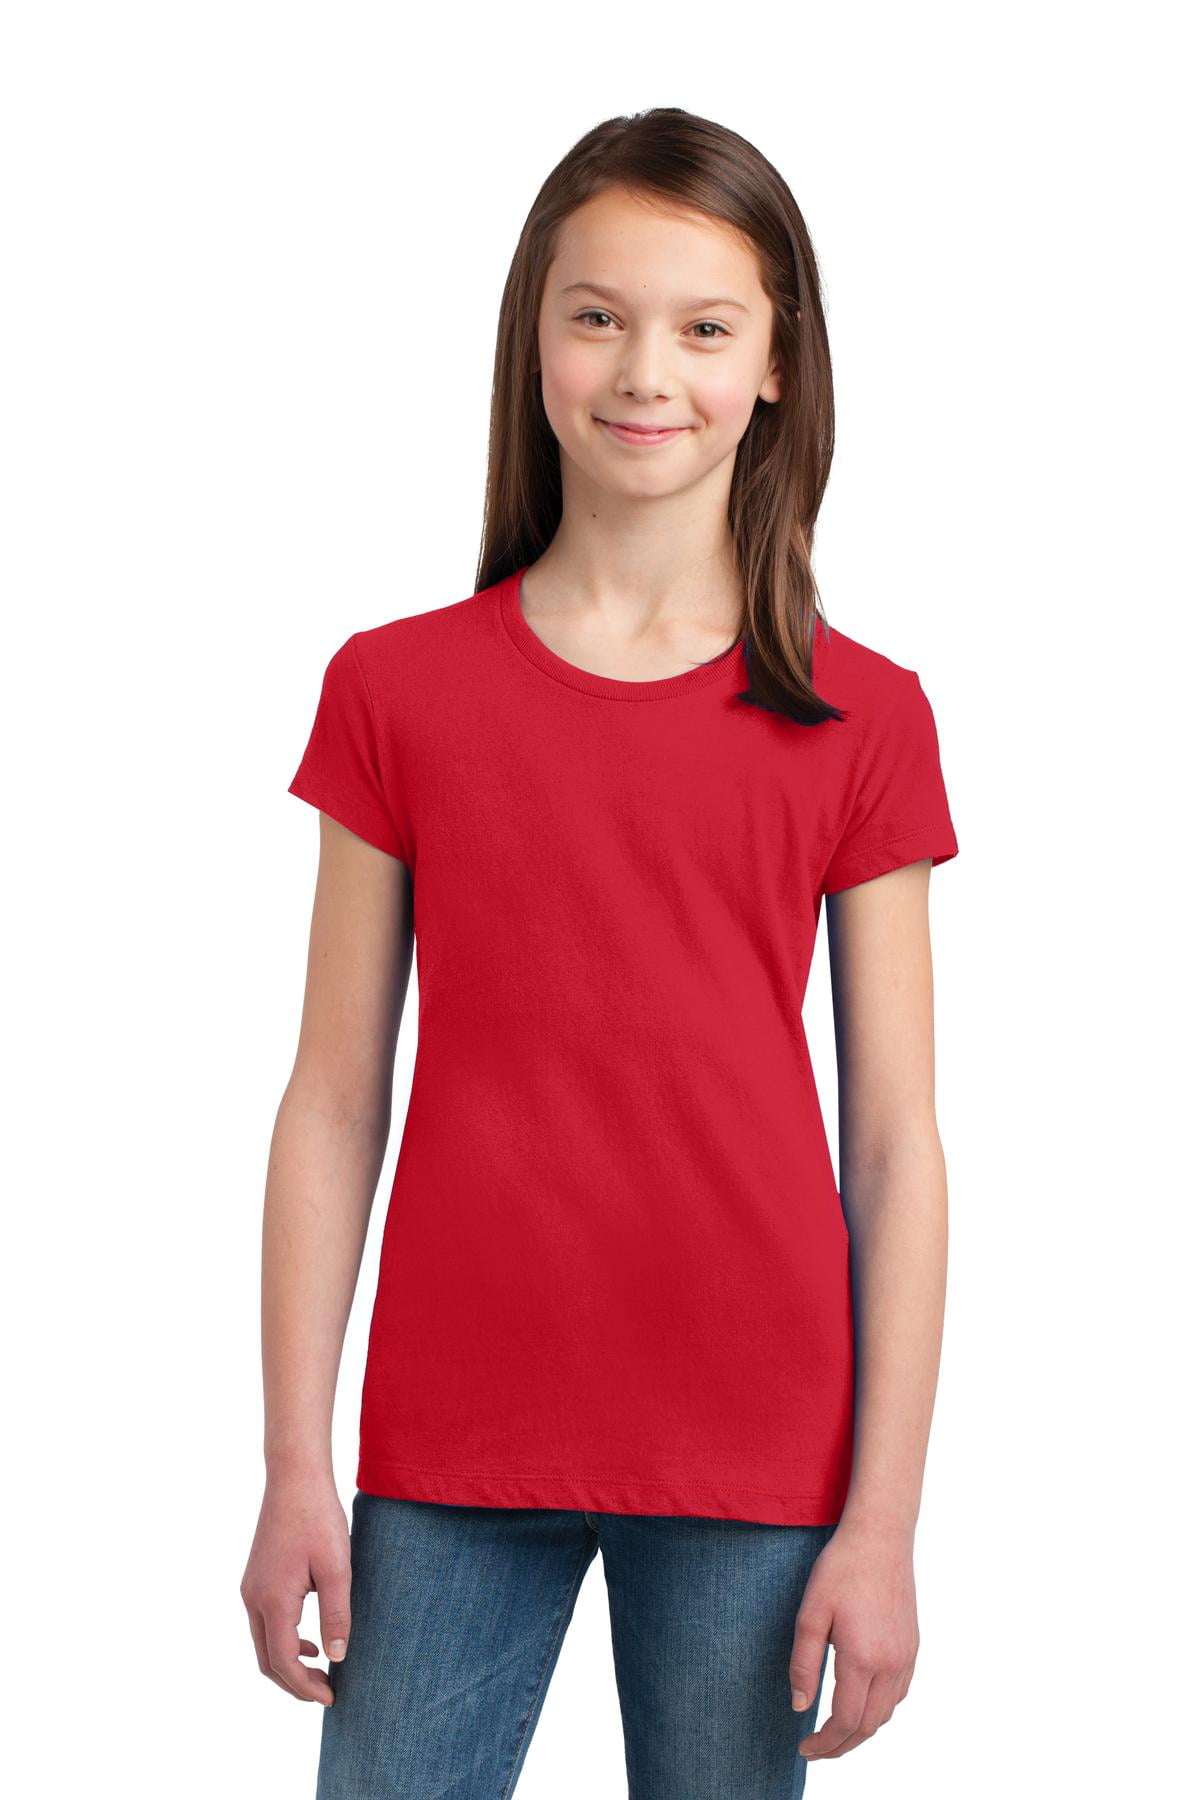 RedBrowm The T-Shirt Blouse Girls Shirts PatternedSummer Tops